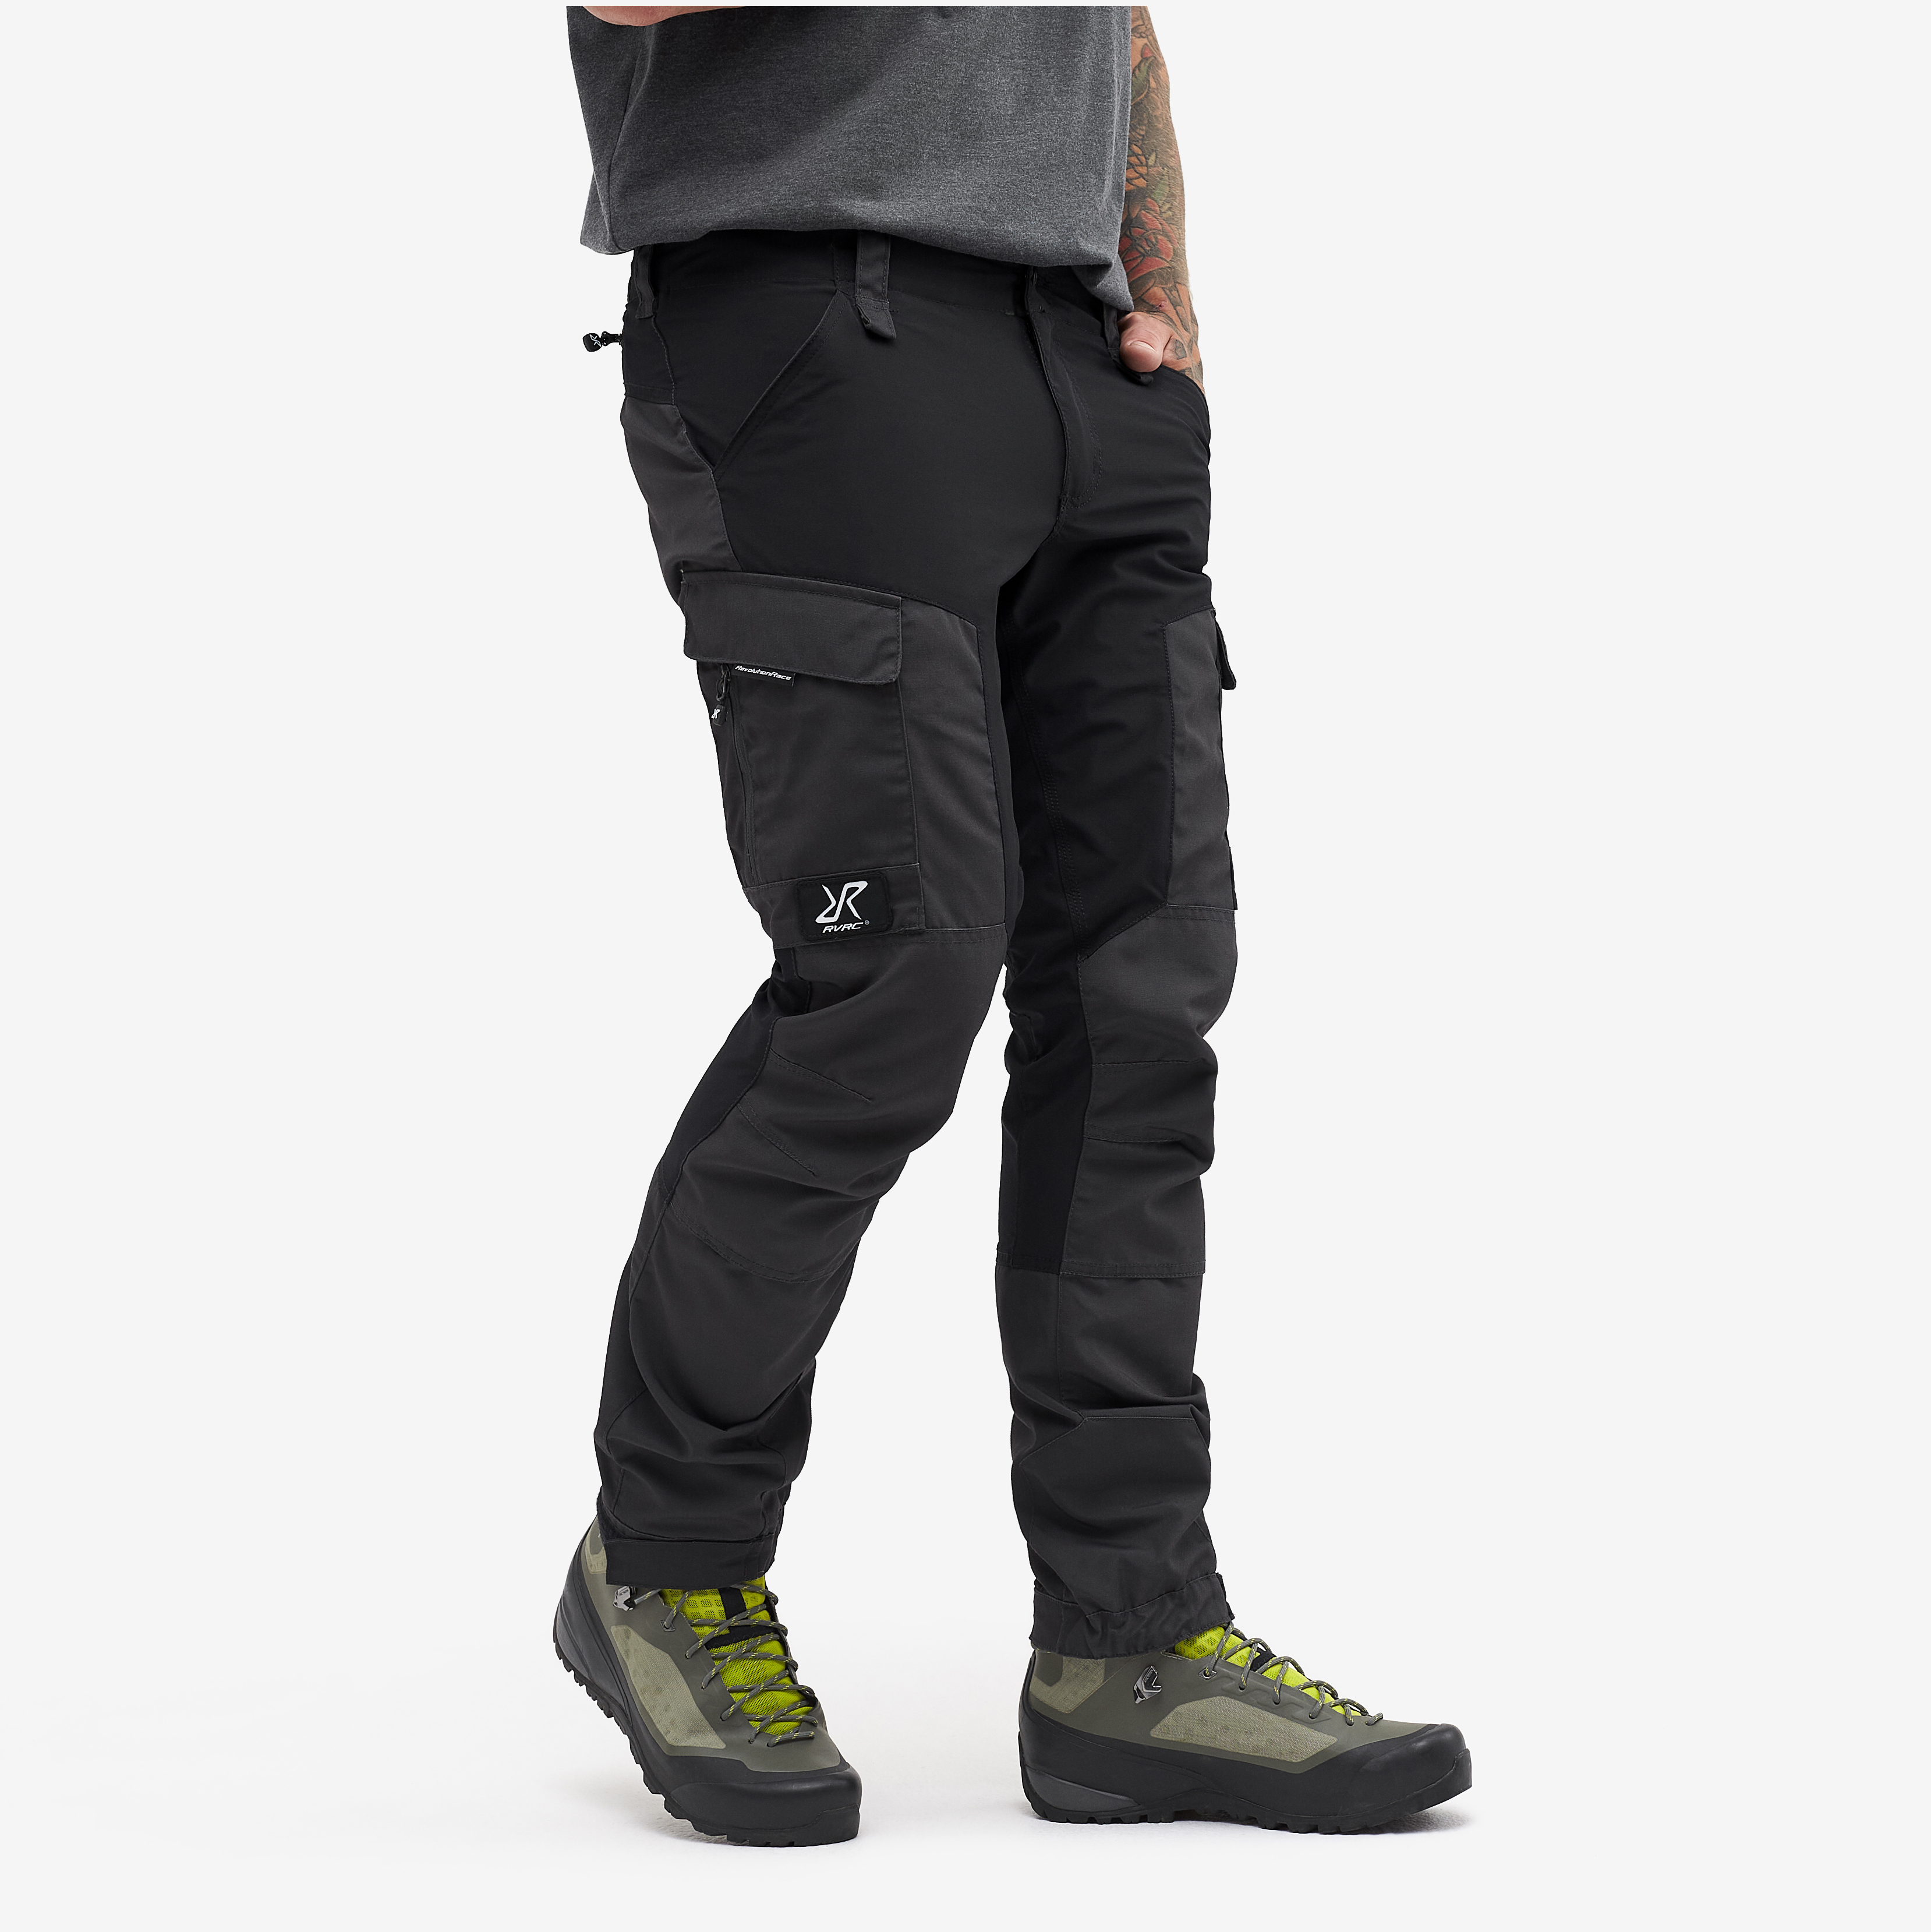 RVRC GP Short outdoorové kalhoty pro muže v černé barvě